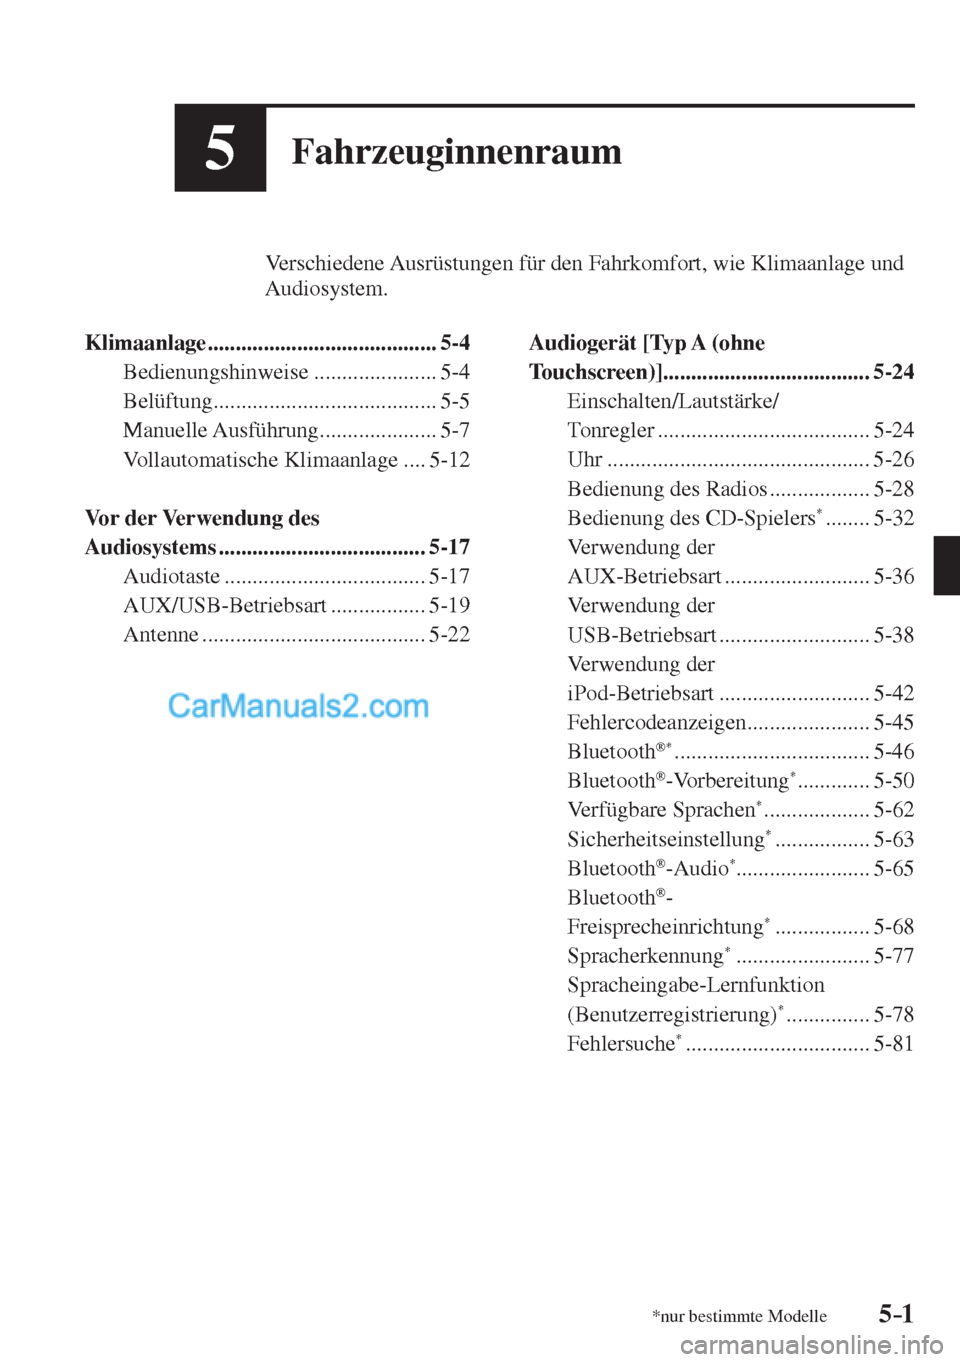 MAZDA MODEL CX-5 2017  Betriebsanleitung (in German) 5–1*nur bestimmte Modelle5–1
5Fahrzeuginnenraum
         Verschiedene Ausrüstungen für den Fahrkomfort, wie Klimaanlage und 
     Audiosystem.
  
   Klimaanlage  ................................